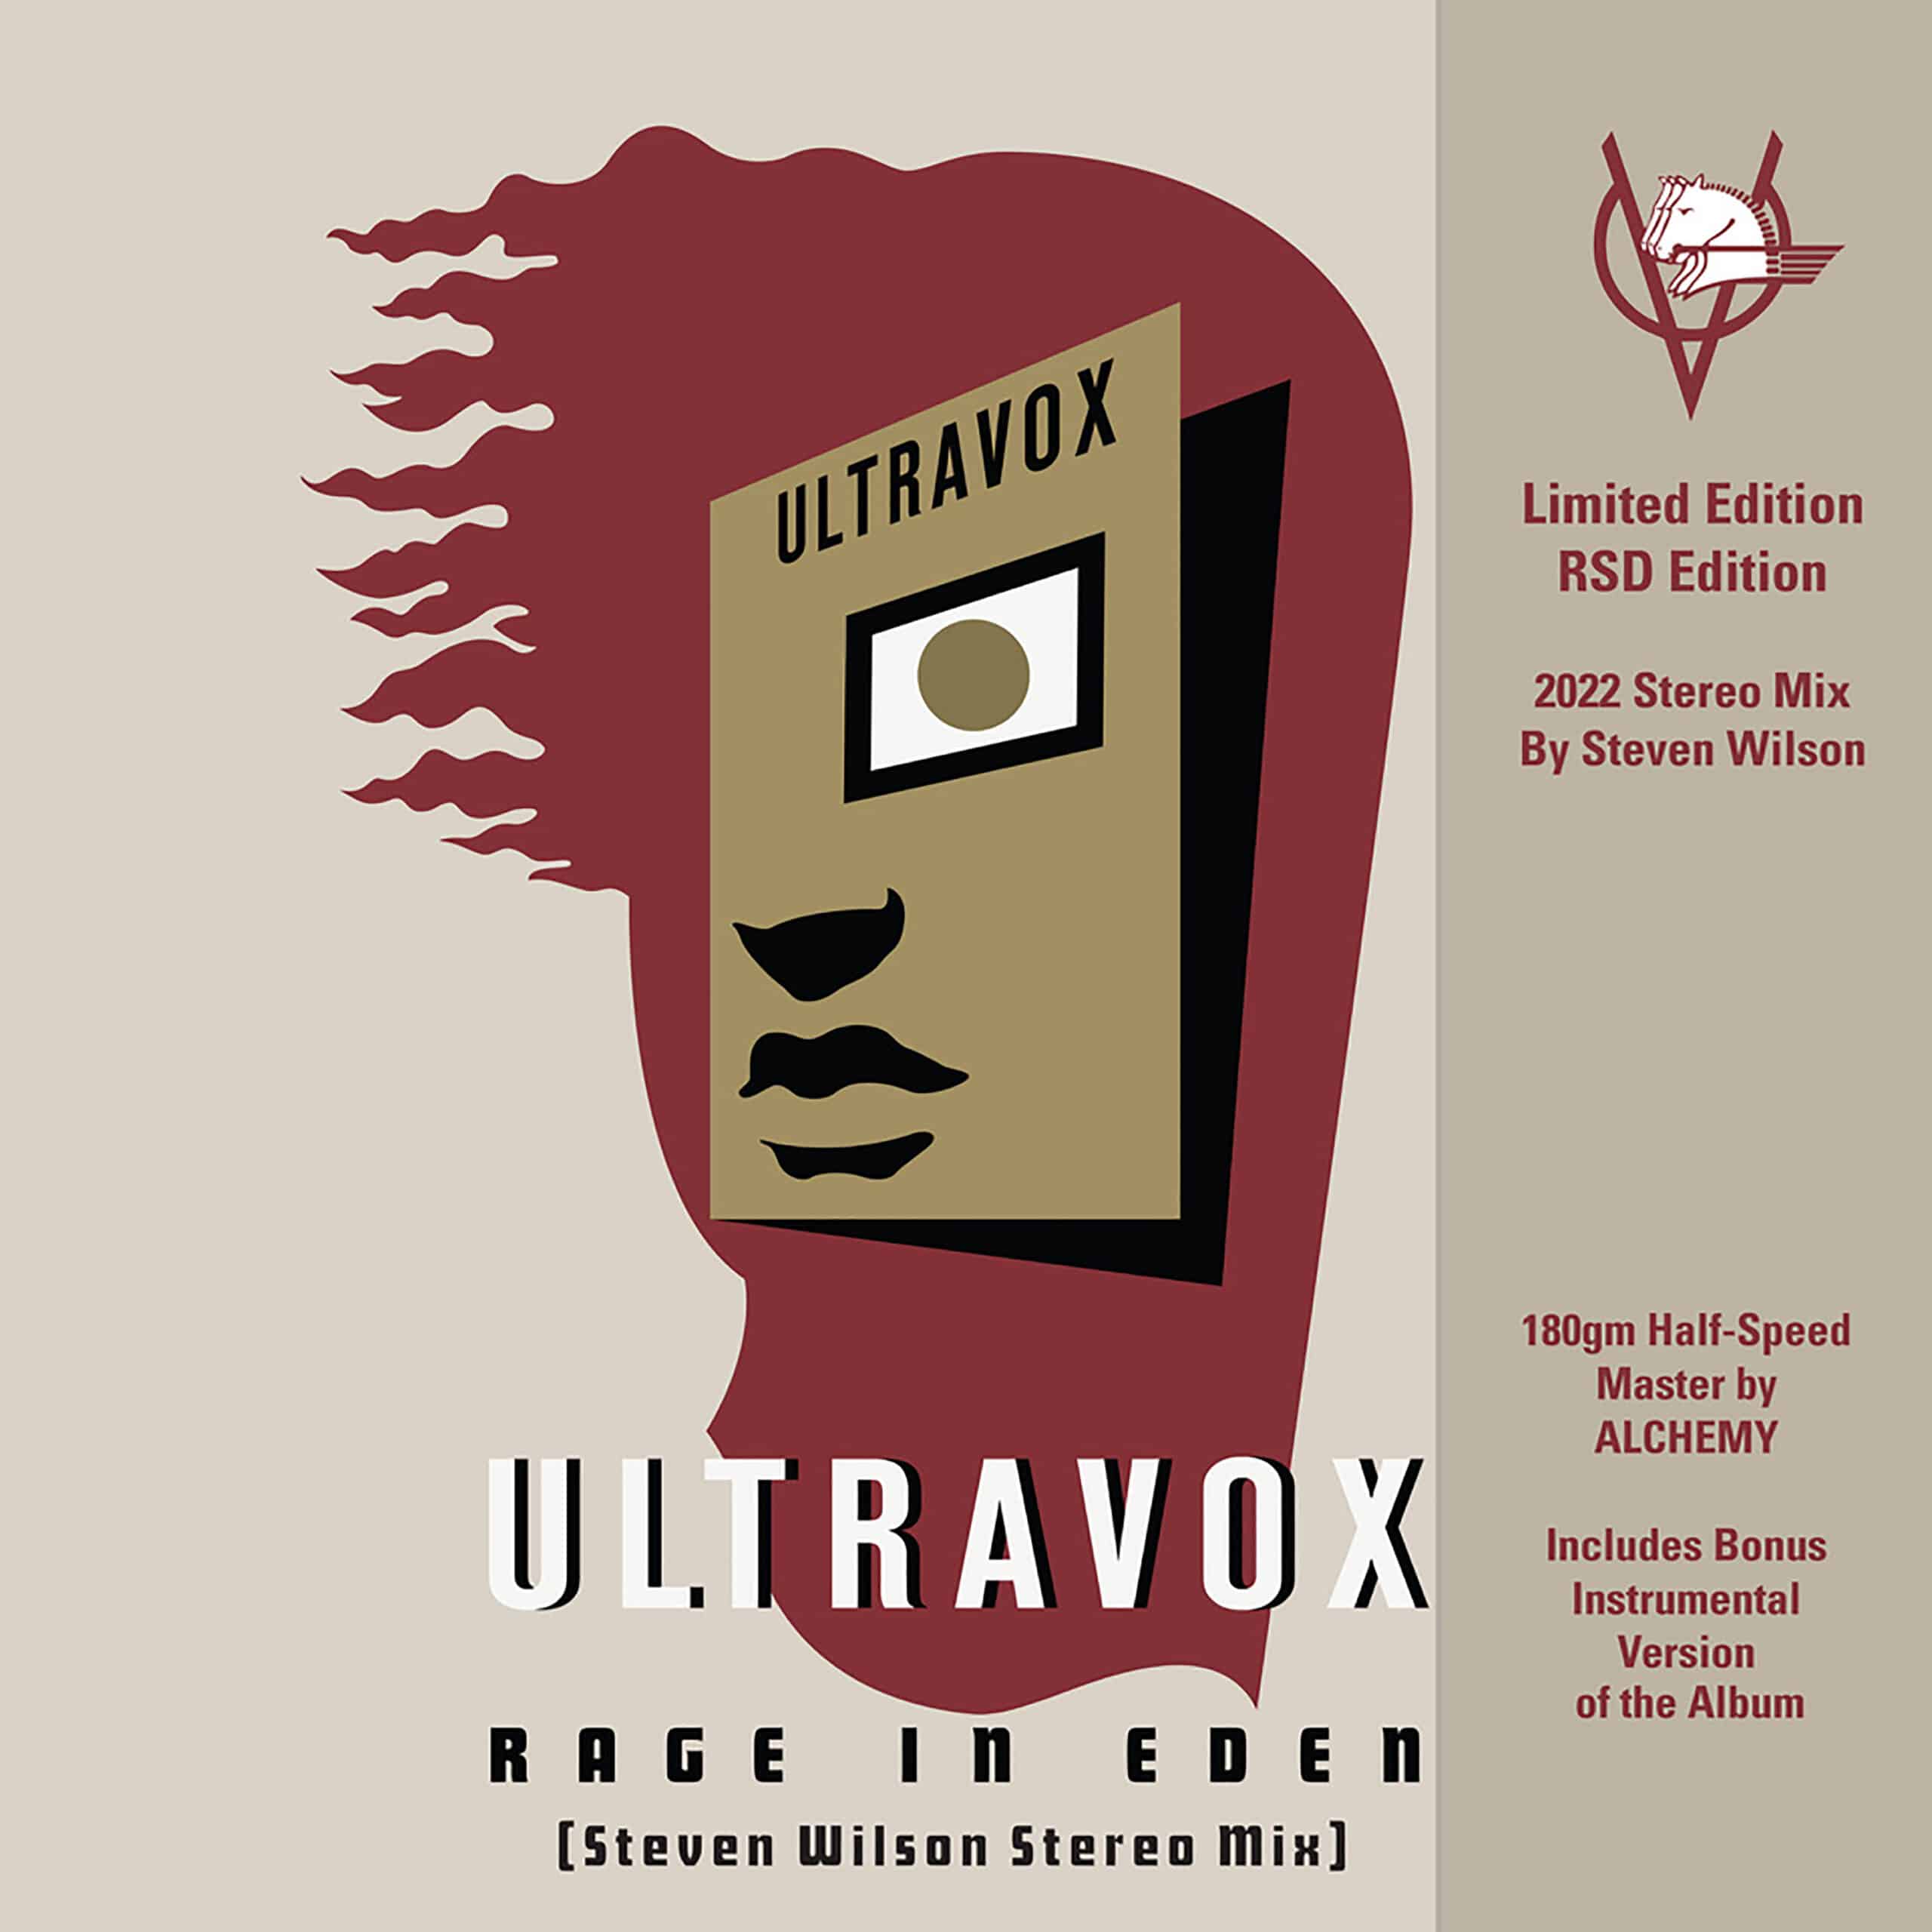 ULTRAVOX - RAGE IN EDEN STEVEN WILSON REMIX (BLACK FRIDAY 2022)